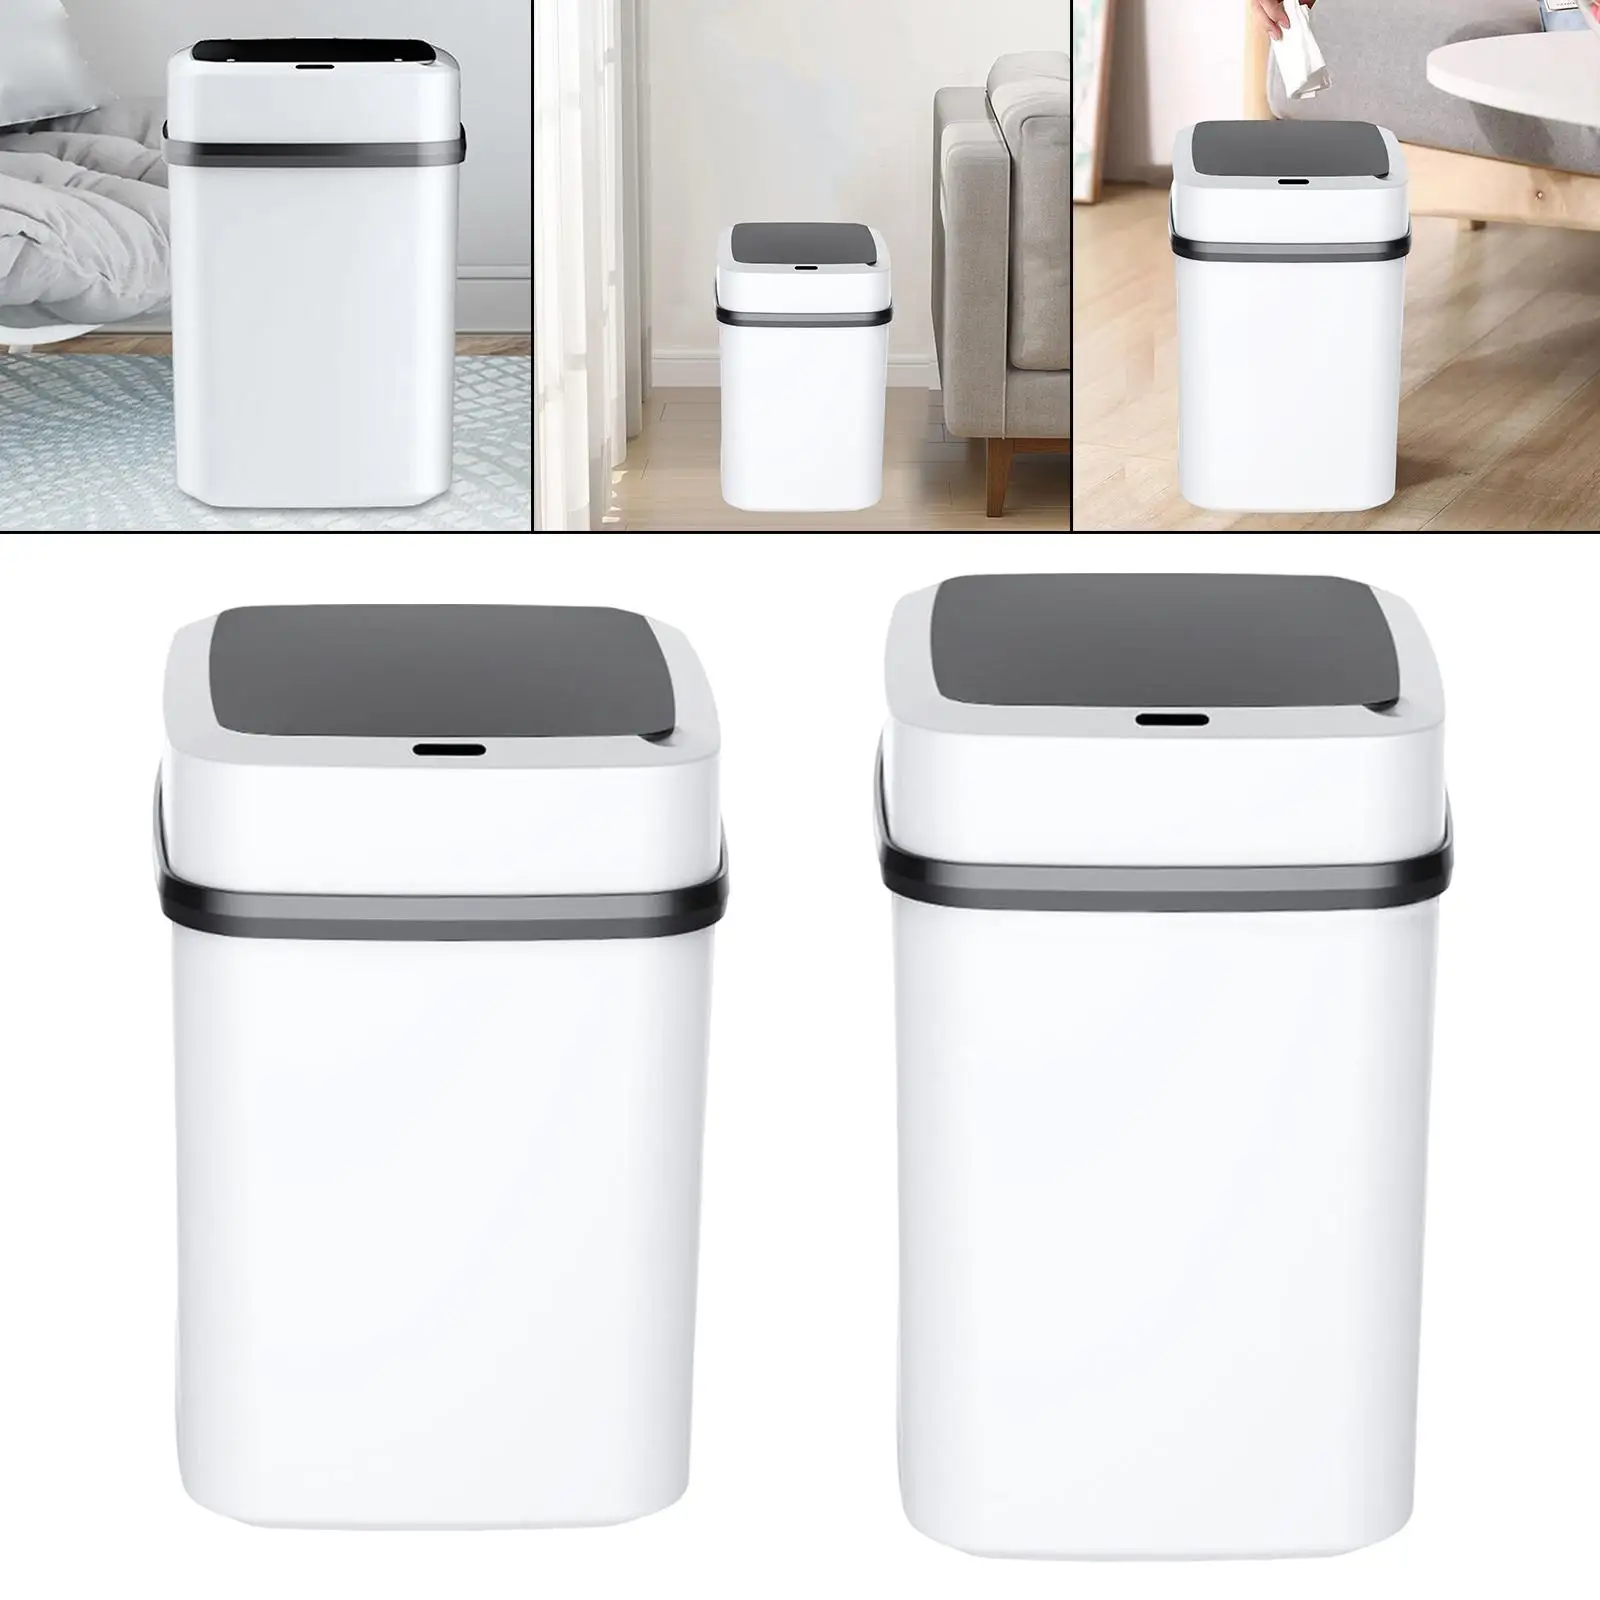 Smart Motion Sensor Trash Bin Recycling Bin Automatic Open Lid Wastebasket Garbage Bin for Hotel RV Office Living Room Home